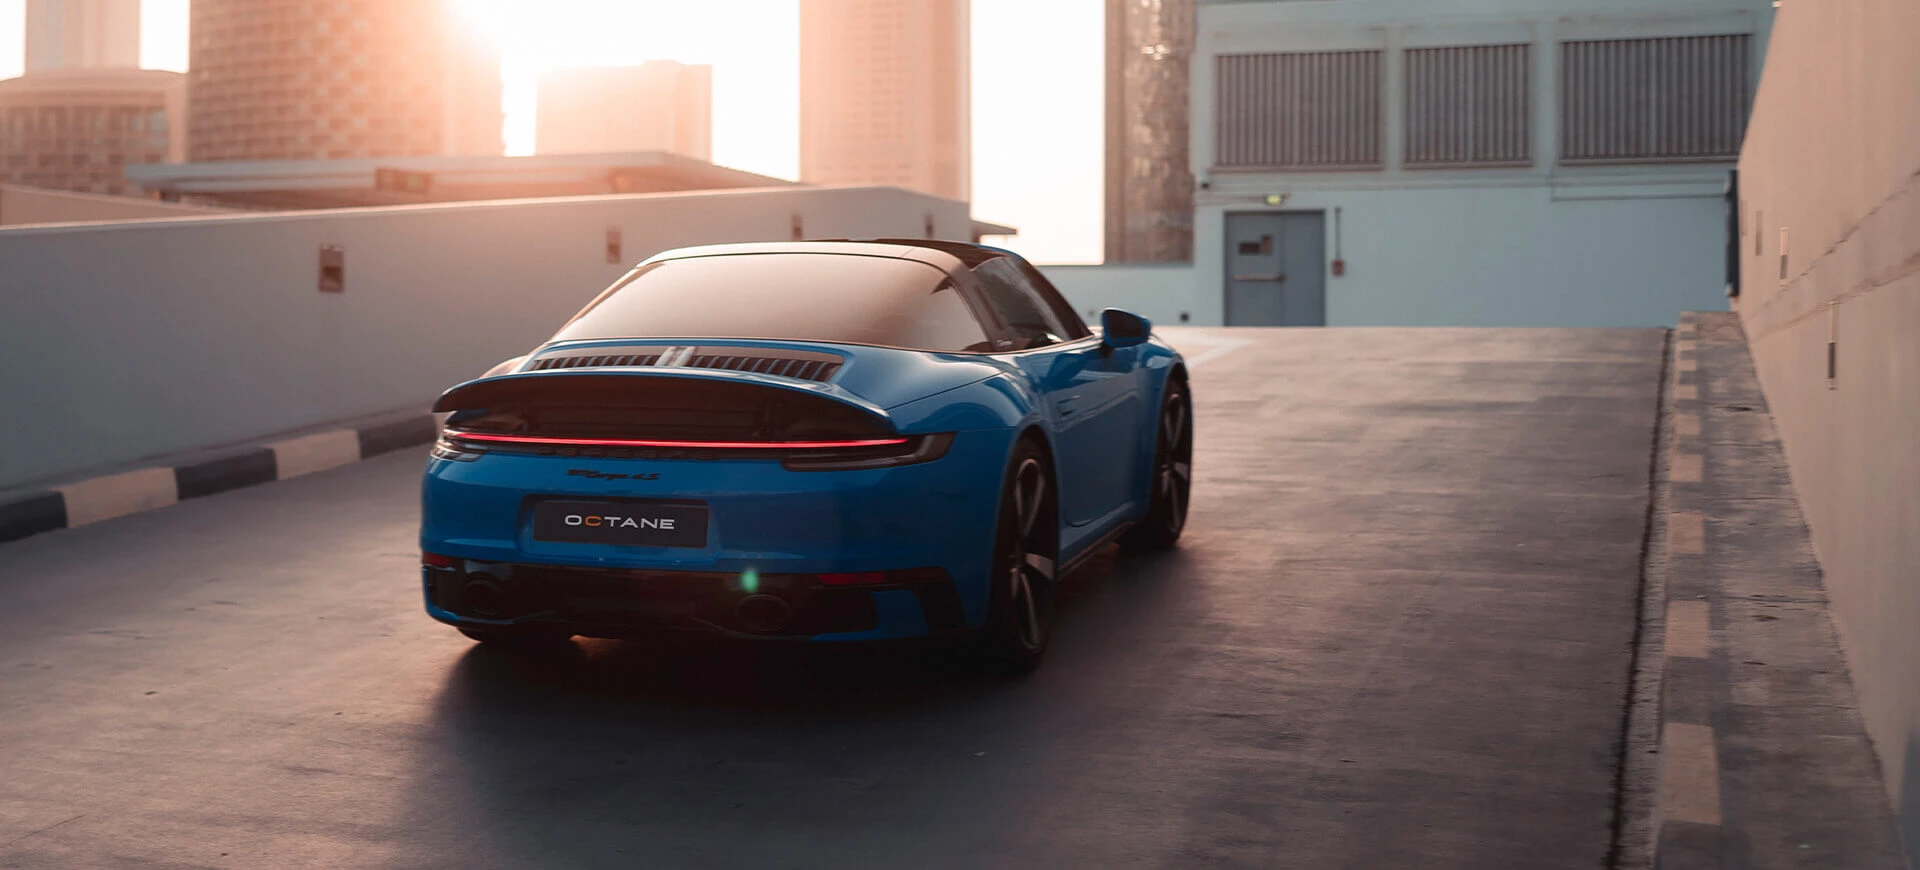 Lej en Porsche i Dubai